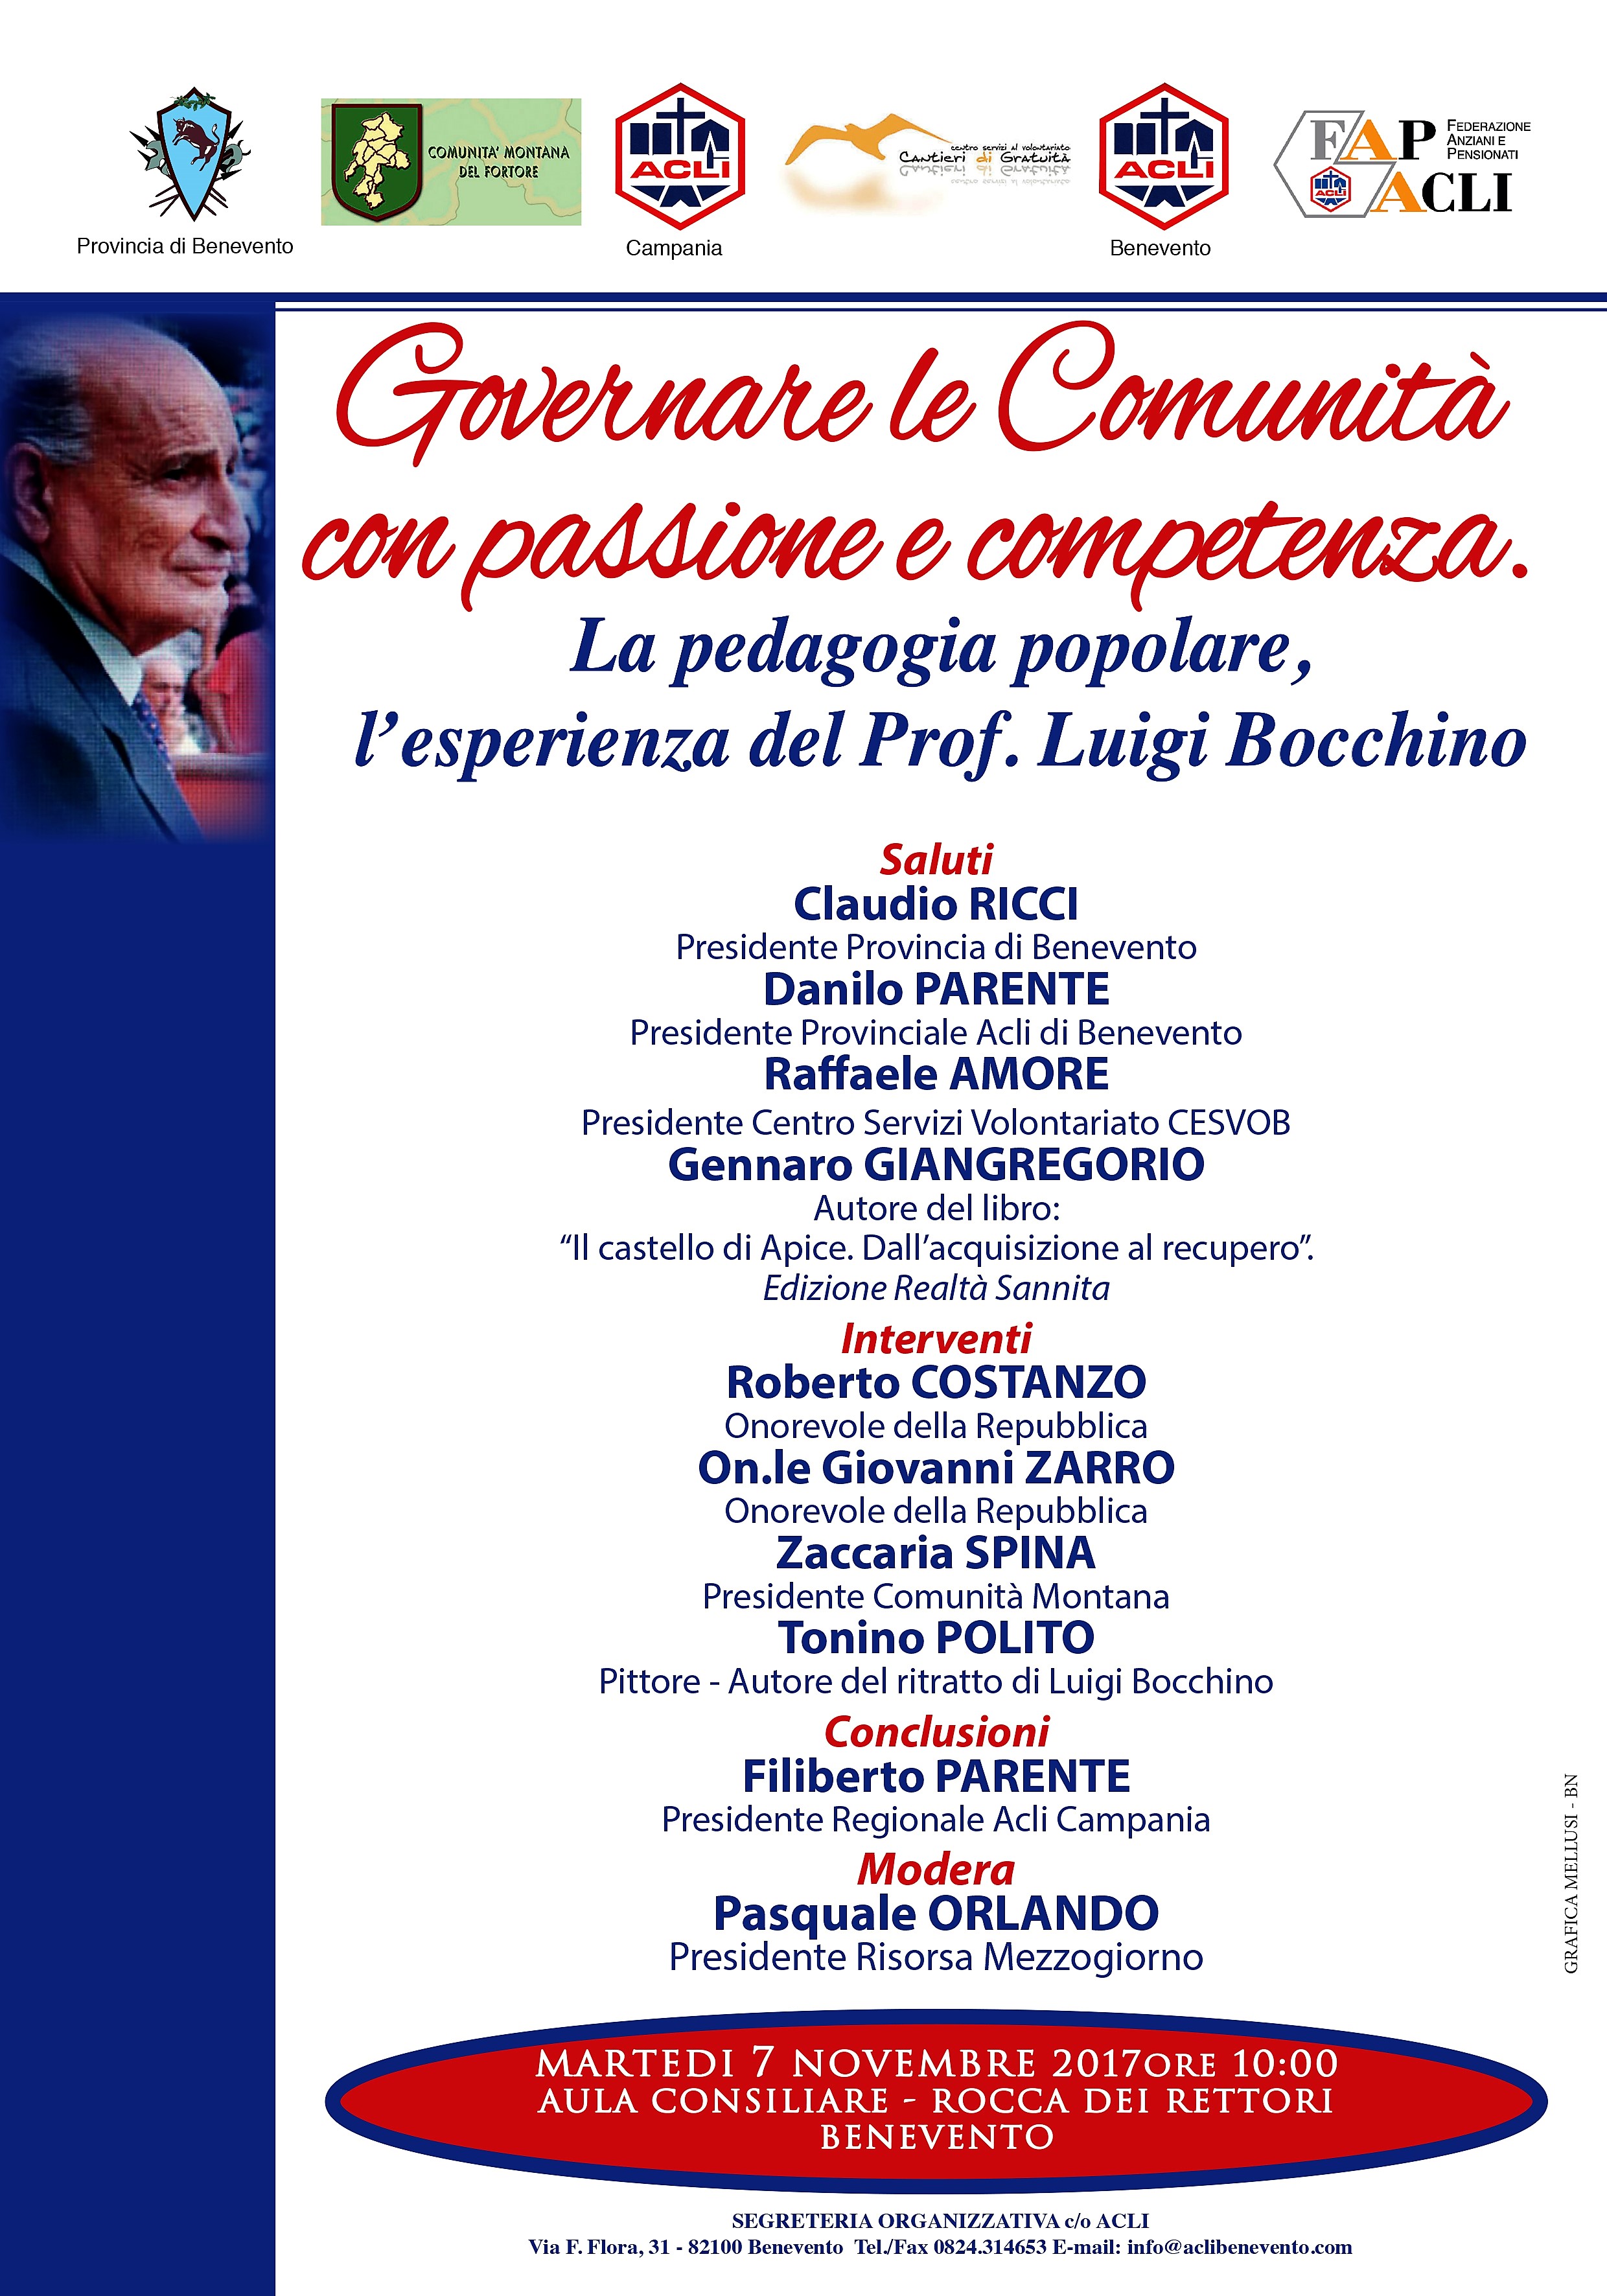 Benevento| La Provincia ricorda con un convegno il Professor Luigi Bocchino